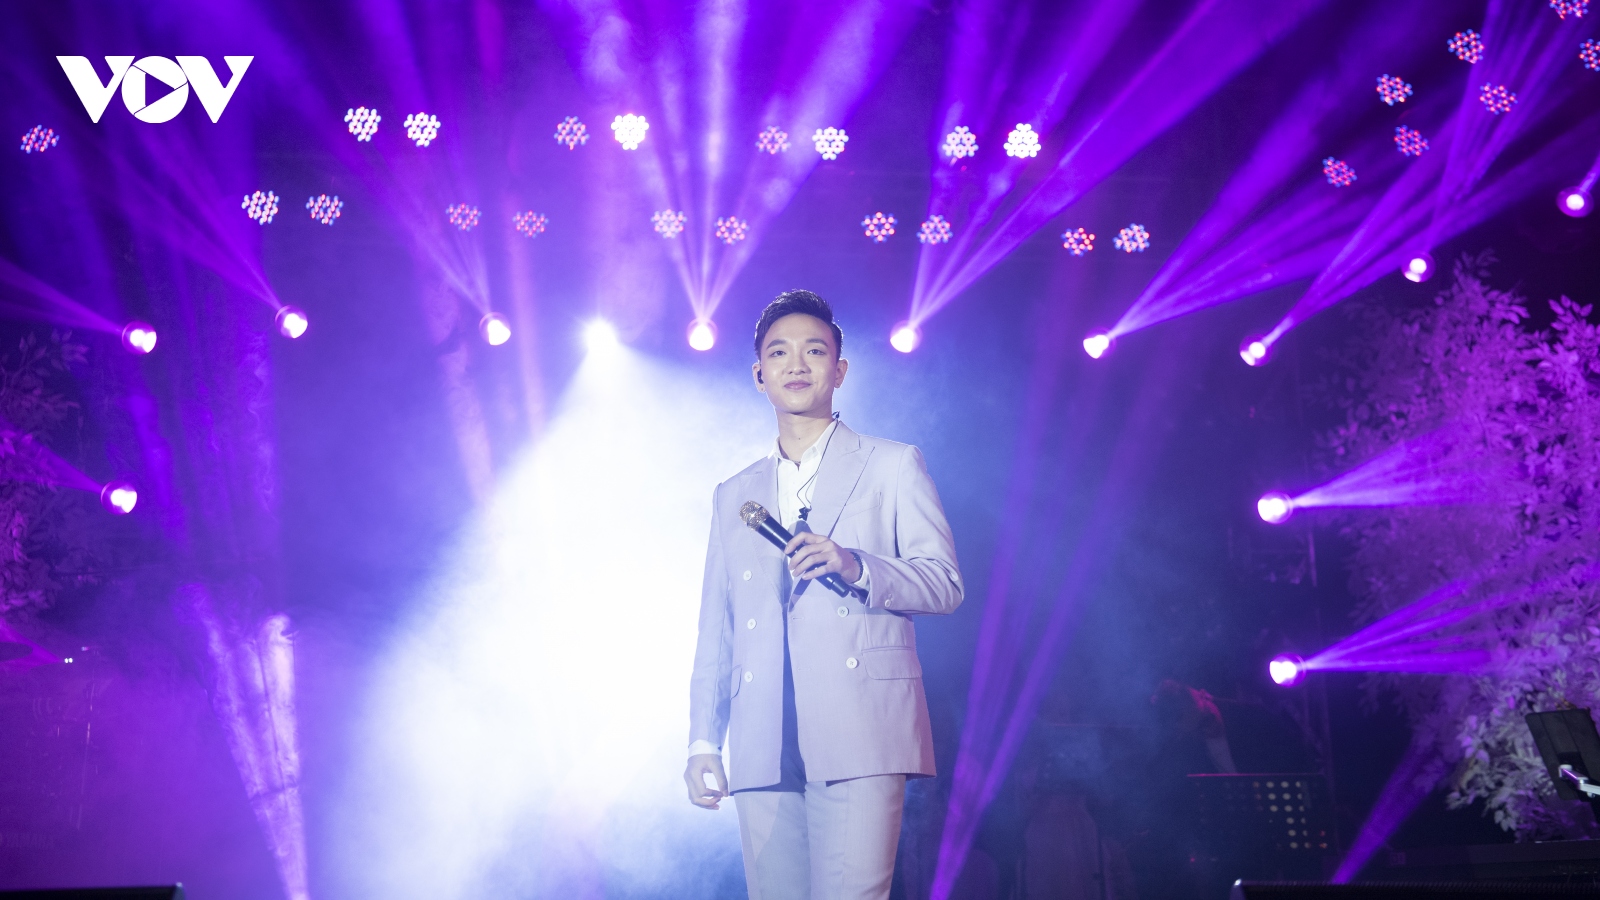 Liveshow “25” của Hoàng Dũng tại Hà Nội: Chạm vào giấc mơ đầy cảm xúc